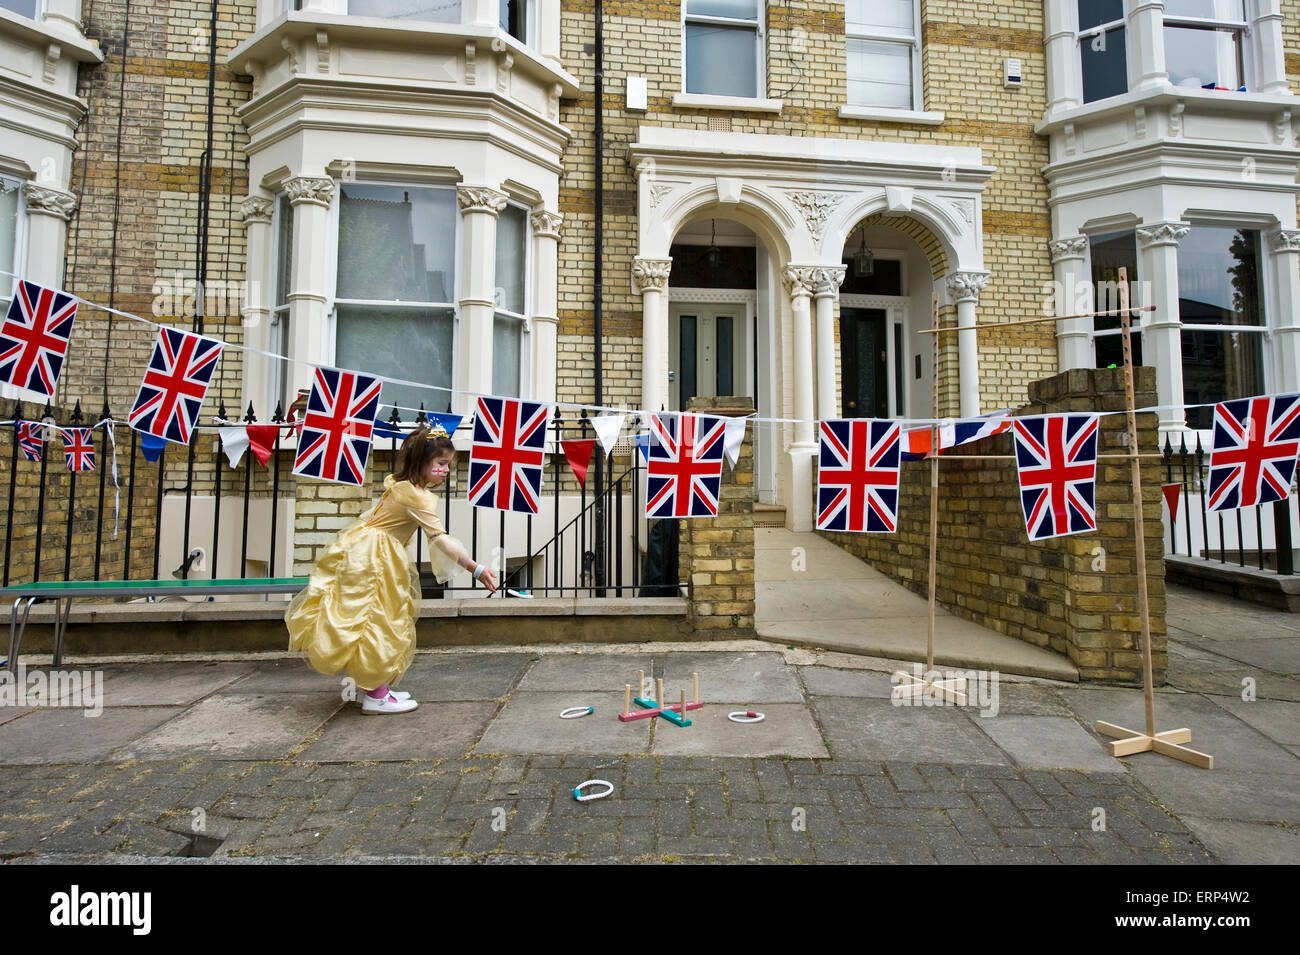 Ein kleines Mädchen spielt Quoits in einer Londoner Straße Partei mit Reihenhäusern und Union Jacks zur Feier der Geburt von Prince George Stockfoto